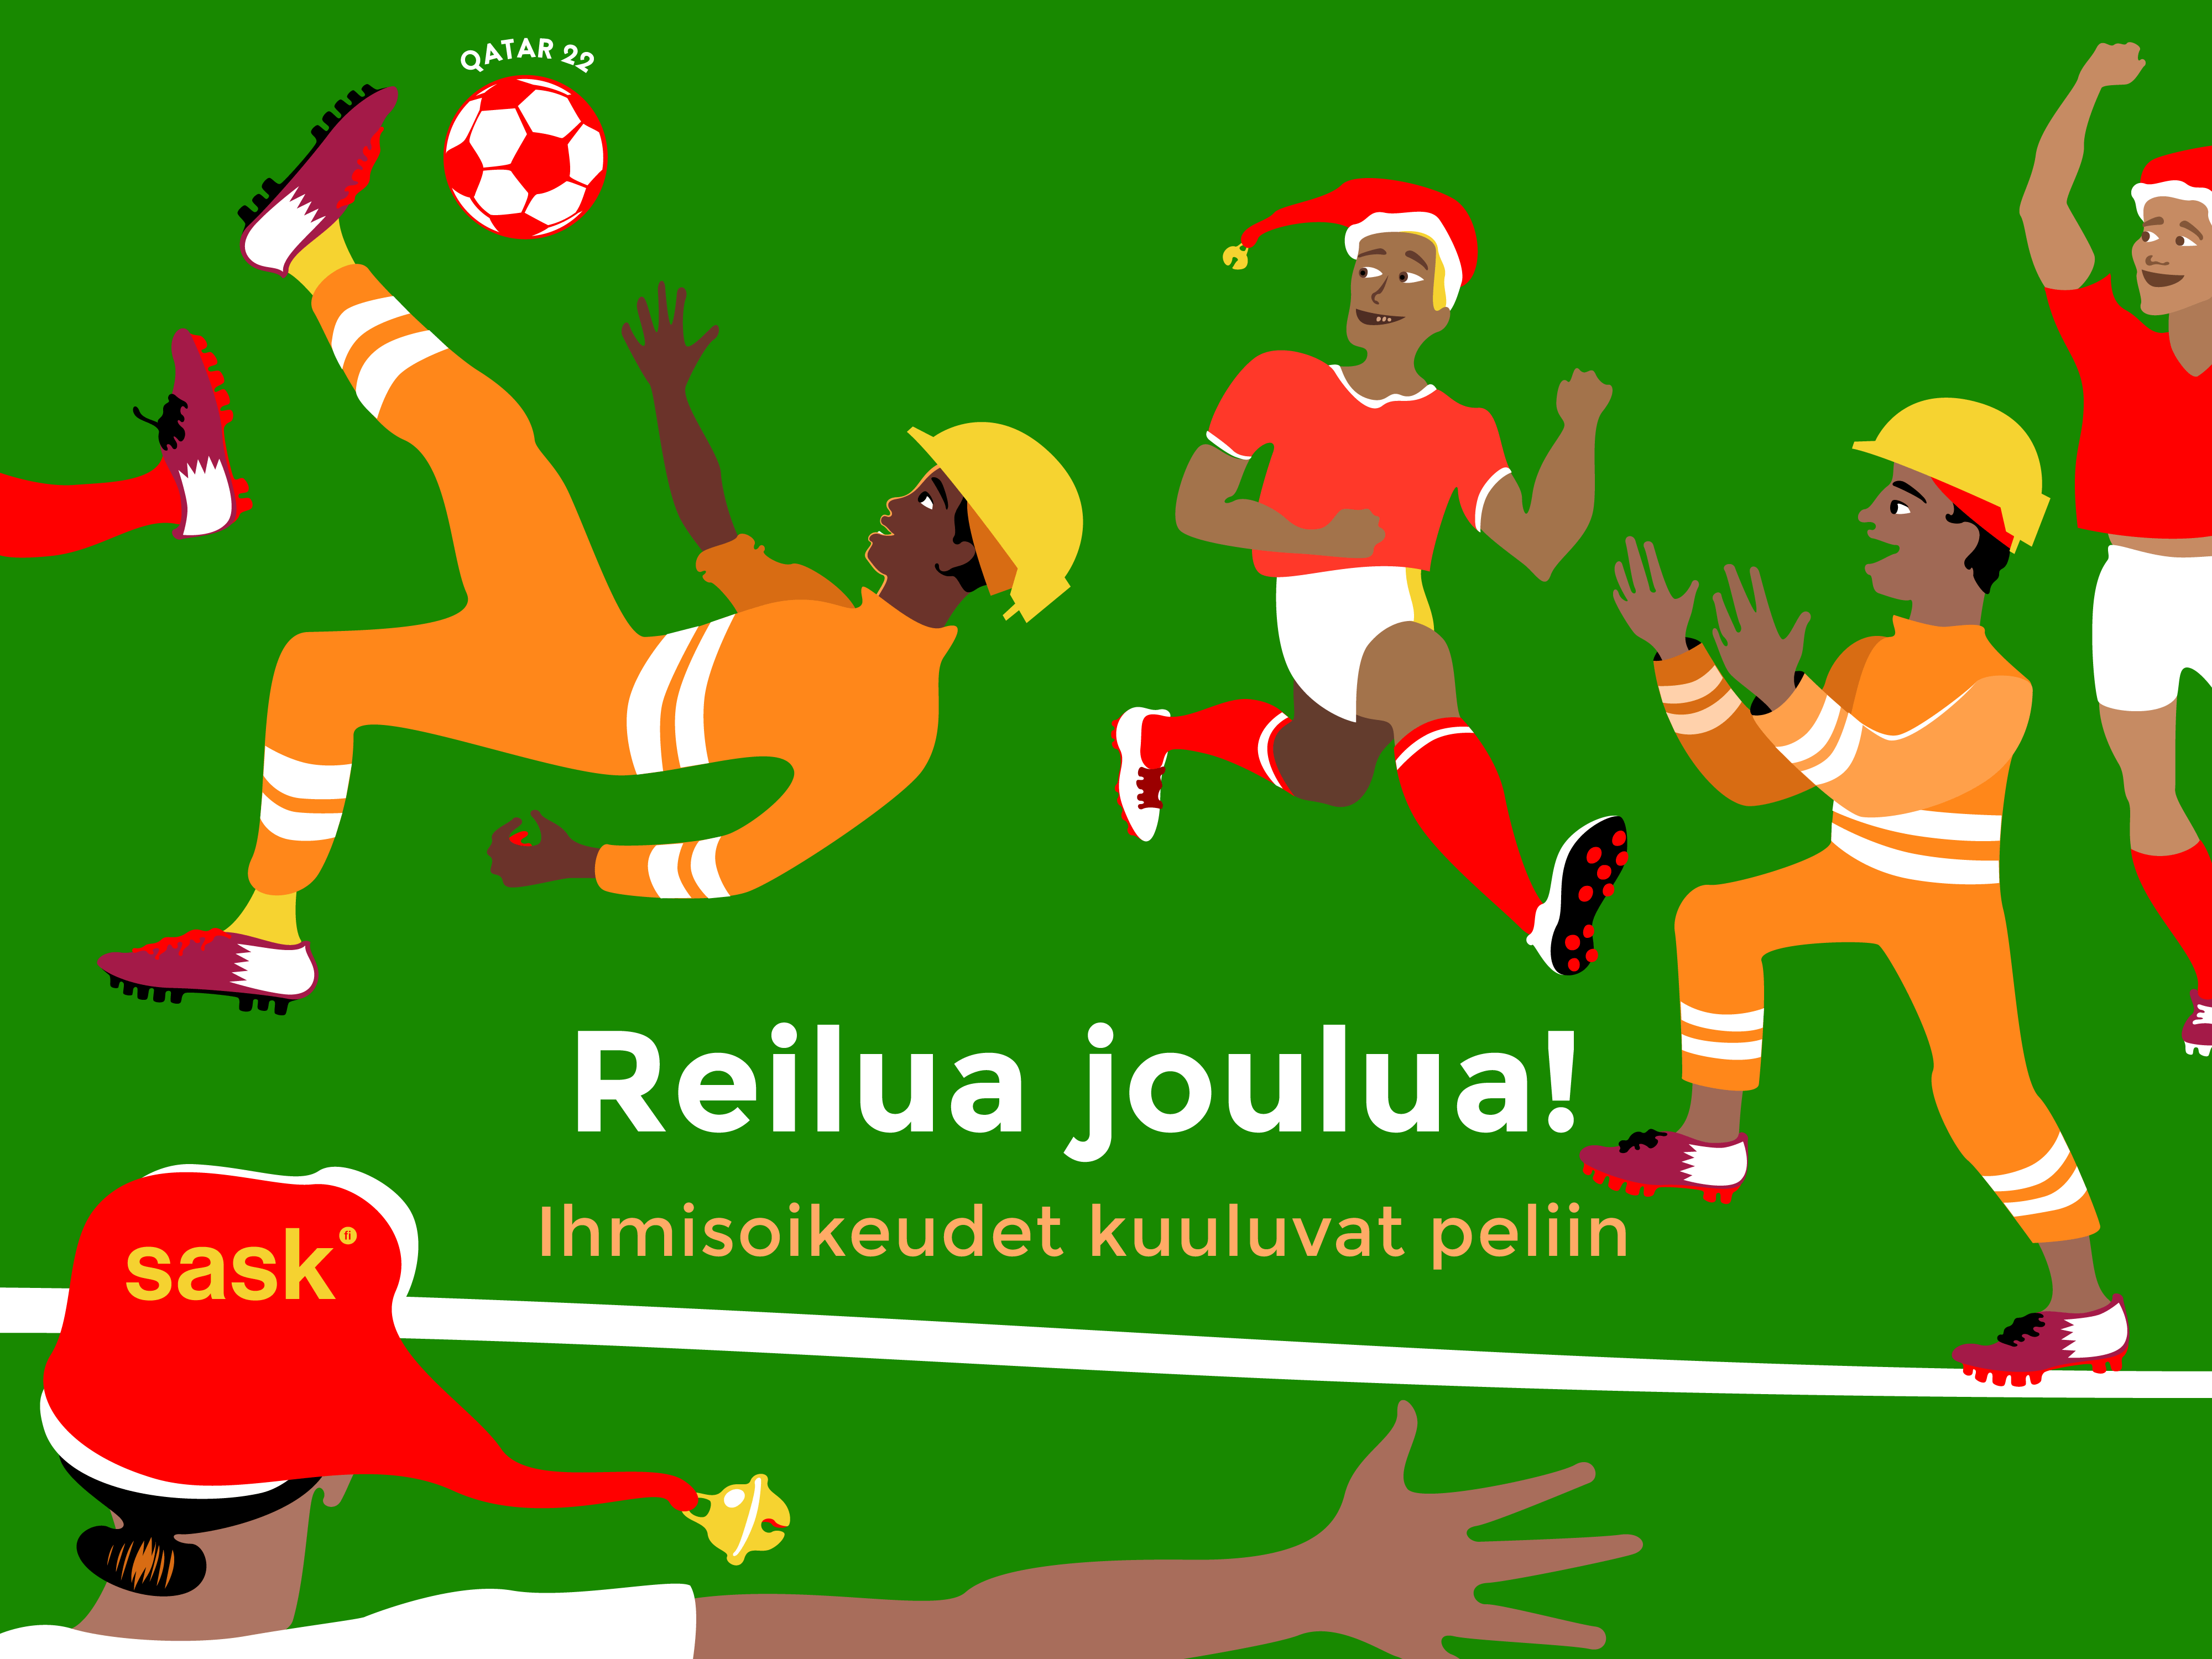 Siirtotyöntekijät ja jalkapalloilijat pelaavat yhdessä jalkapalloa piirroskuvassa